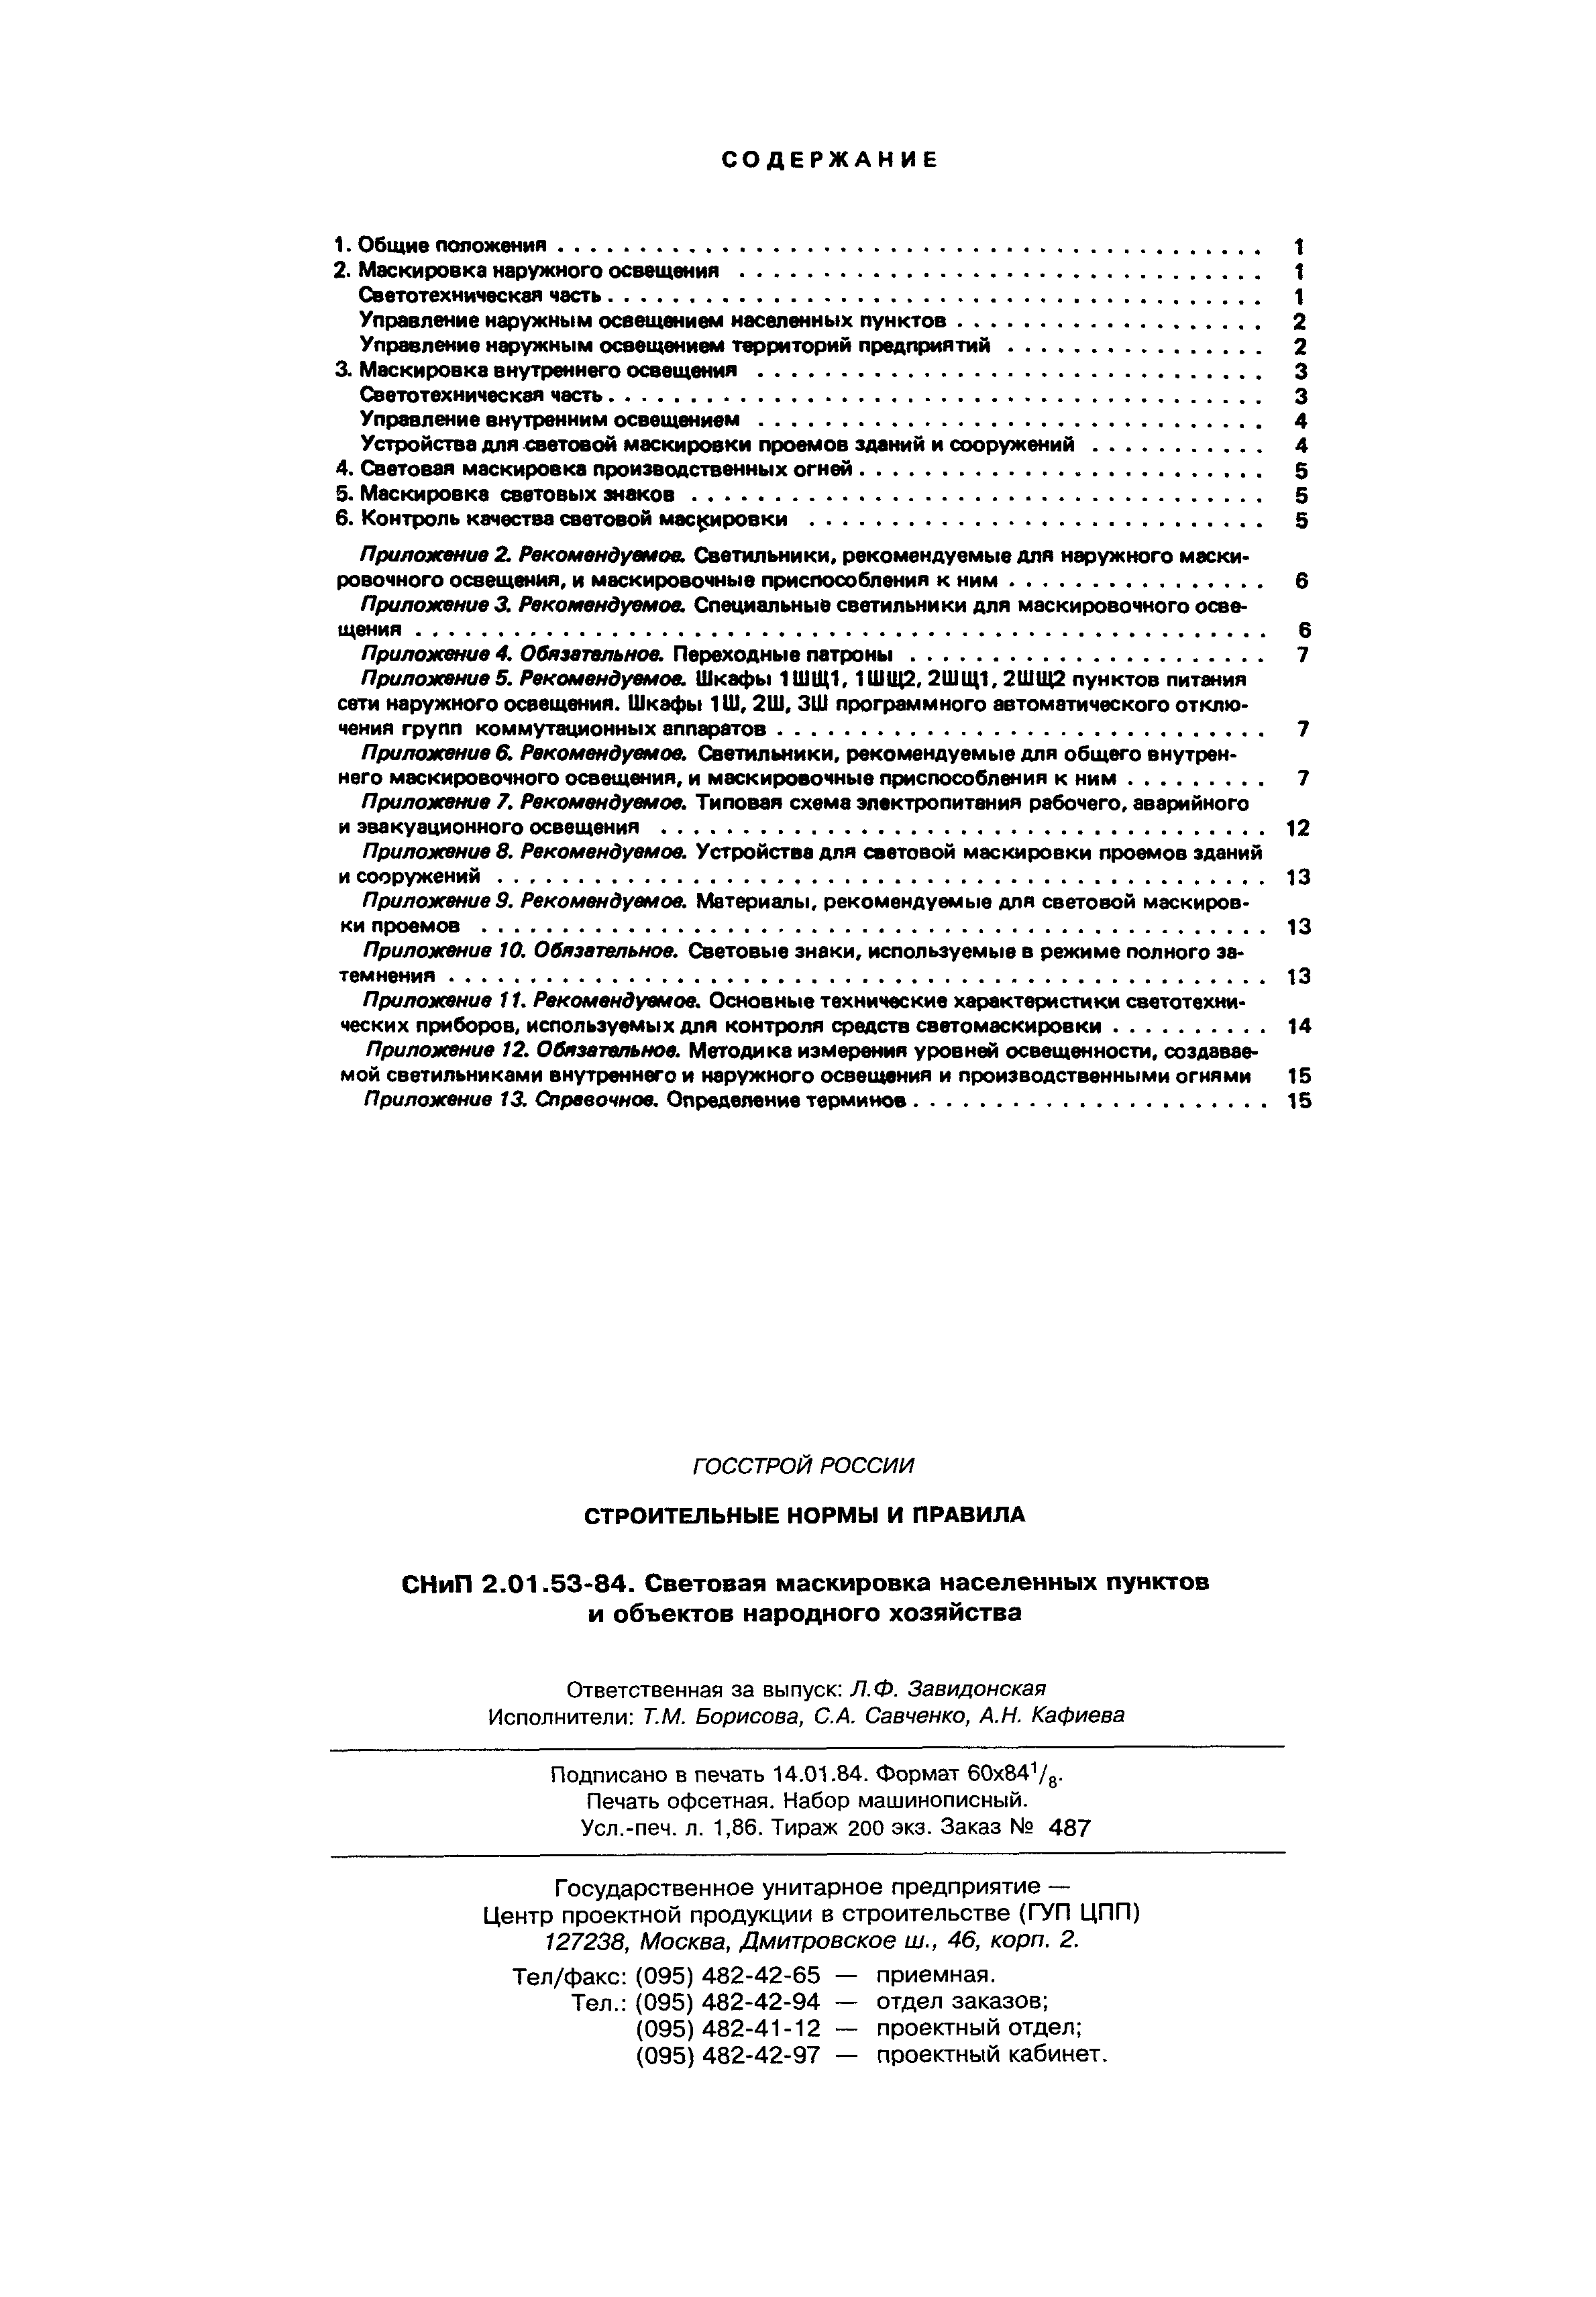 СНиП 2.01.53-84